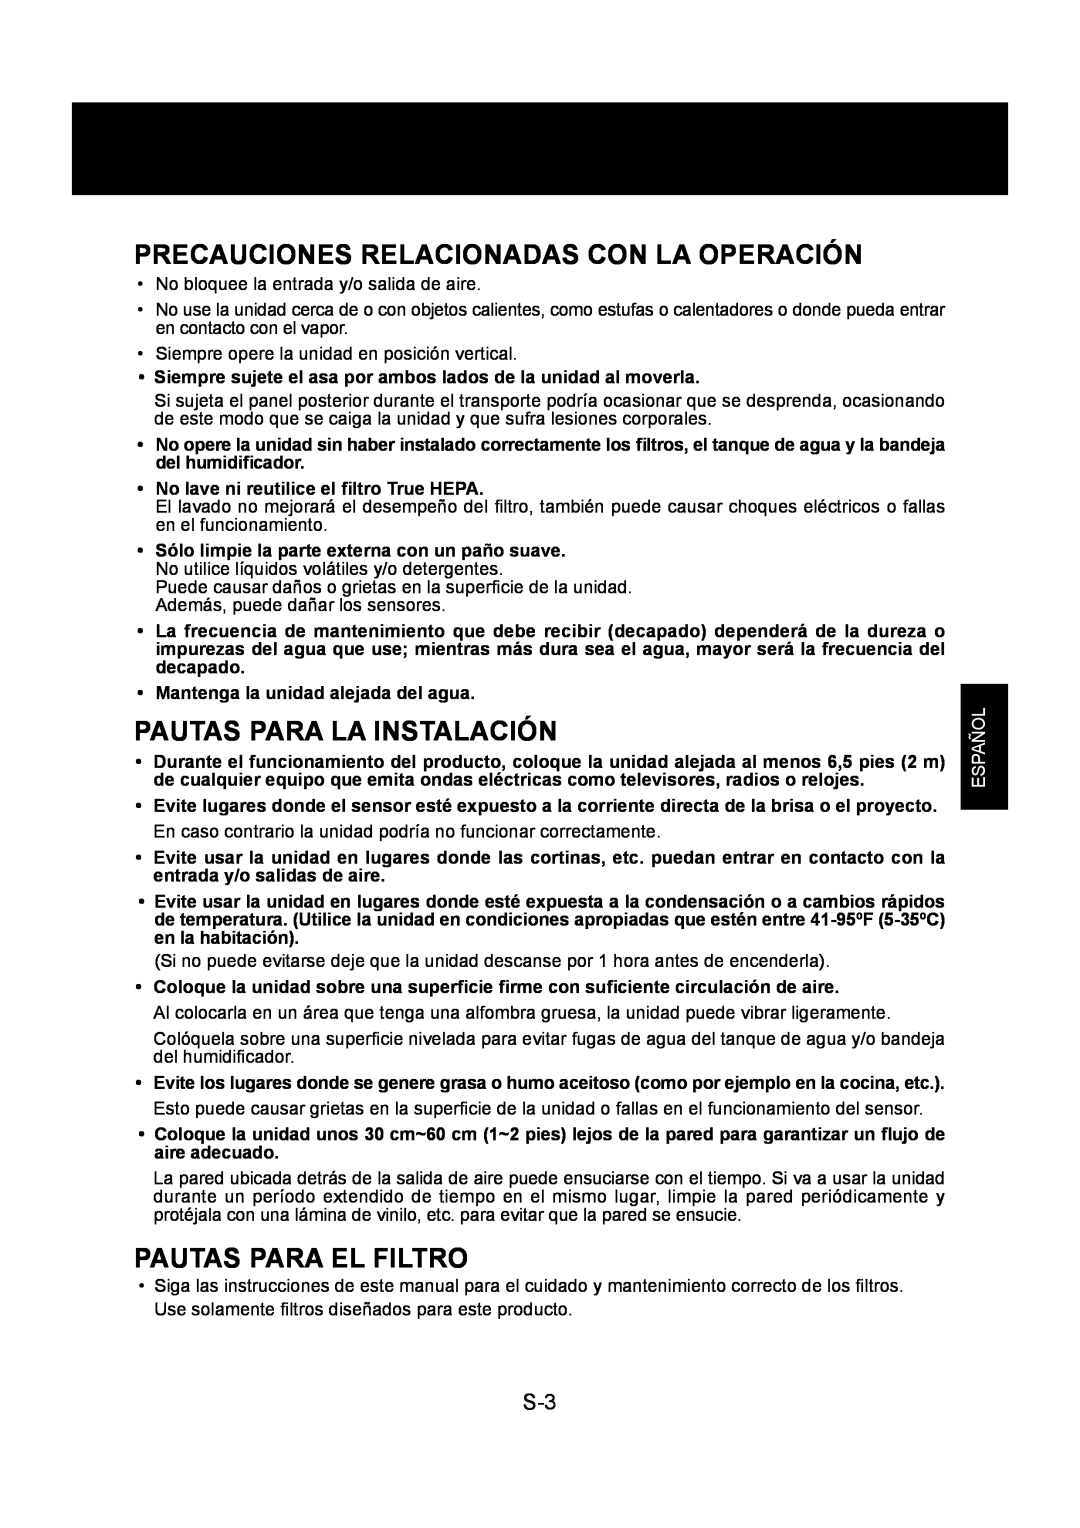 Sharp KC-860U Precauciones Relacionadas Con La Operación, Pautas Para La Instalación, Pautas Para El Filtro, Español 